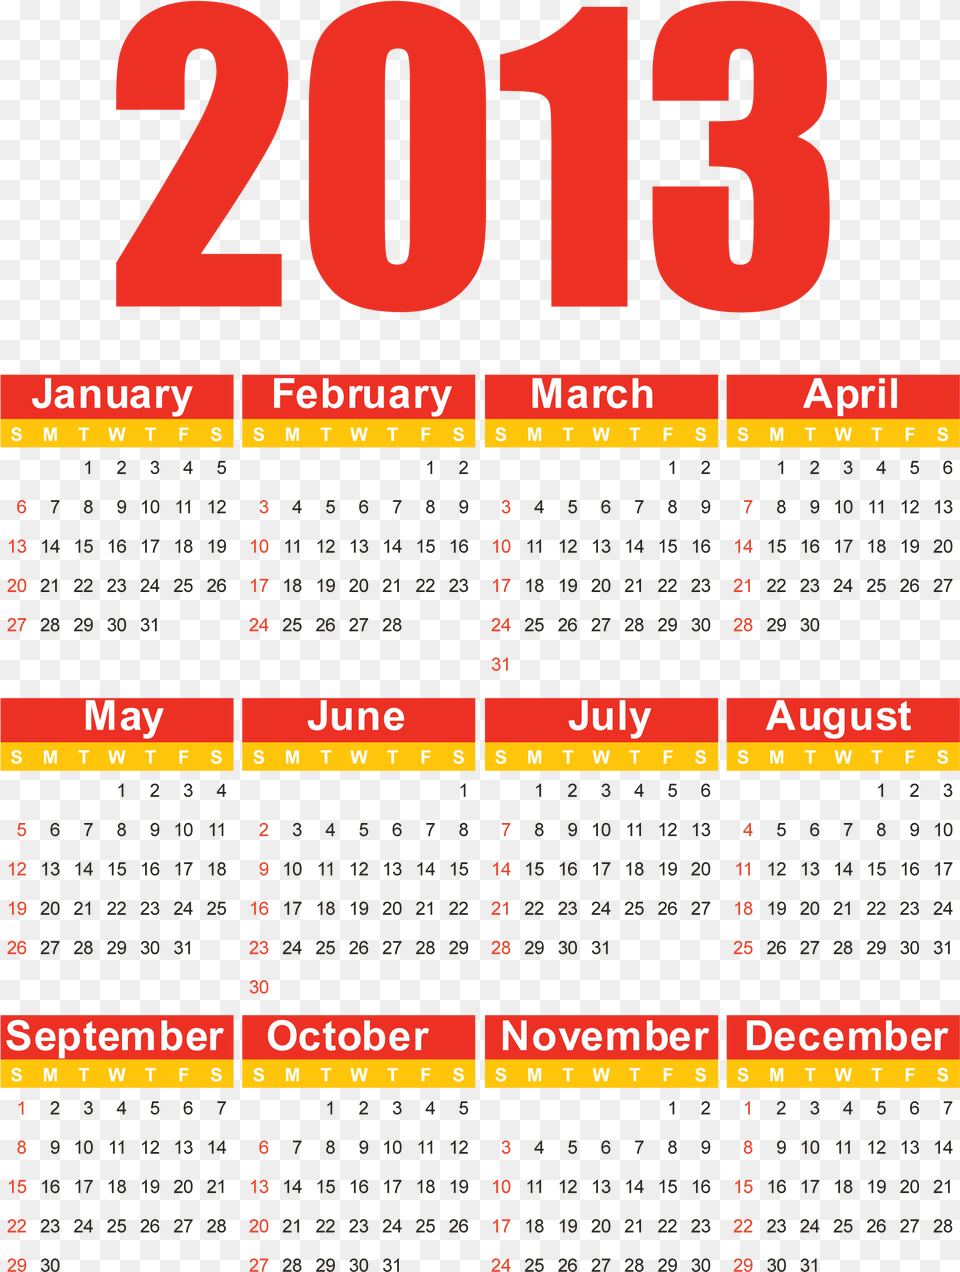 Free Vector 2013 Free Vector Calendar 4 5 4 Calendar, Text, Scoreboard Png Image